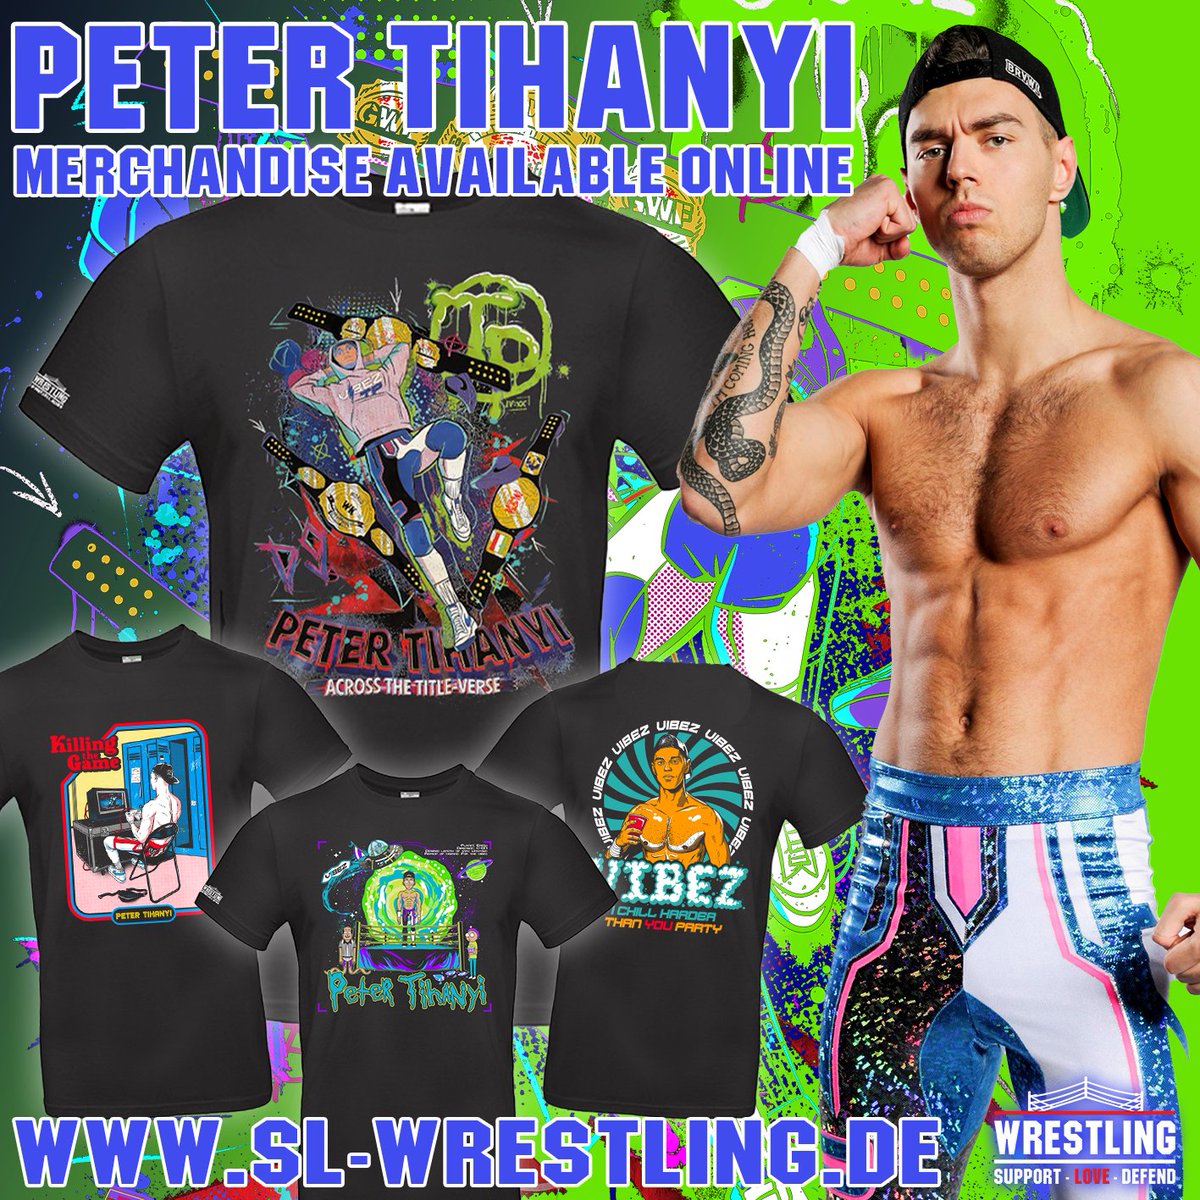 PETER TIHANYI MERCHANDISE Ihr möchtet @petertihanyi1 in Form von Merchandisekäufen unterstützen und nach außen zeigen, wer euer Liebling im Ring ist? Dann haben wir in unserem Shop genau das richtige für euch: sl-wrestling.de/peter-tihanyi #petertihanyi #wrestling #eurowrestling